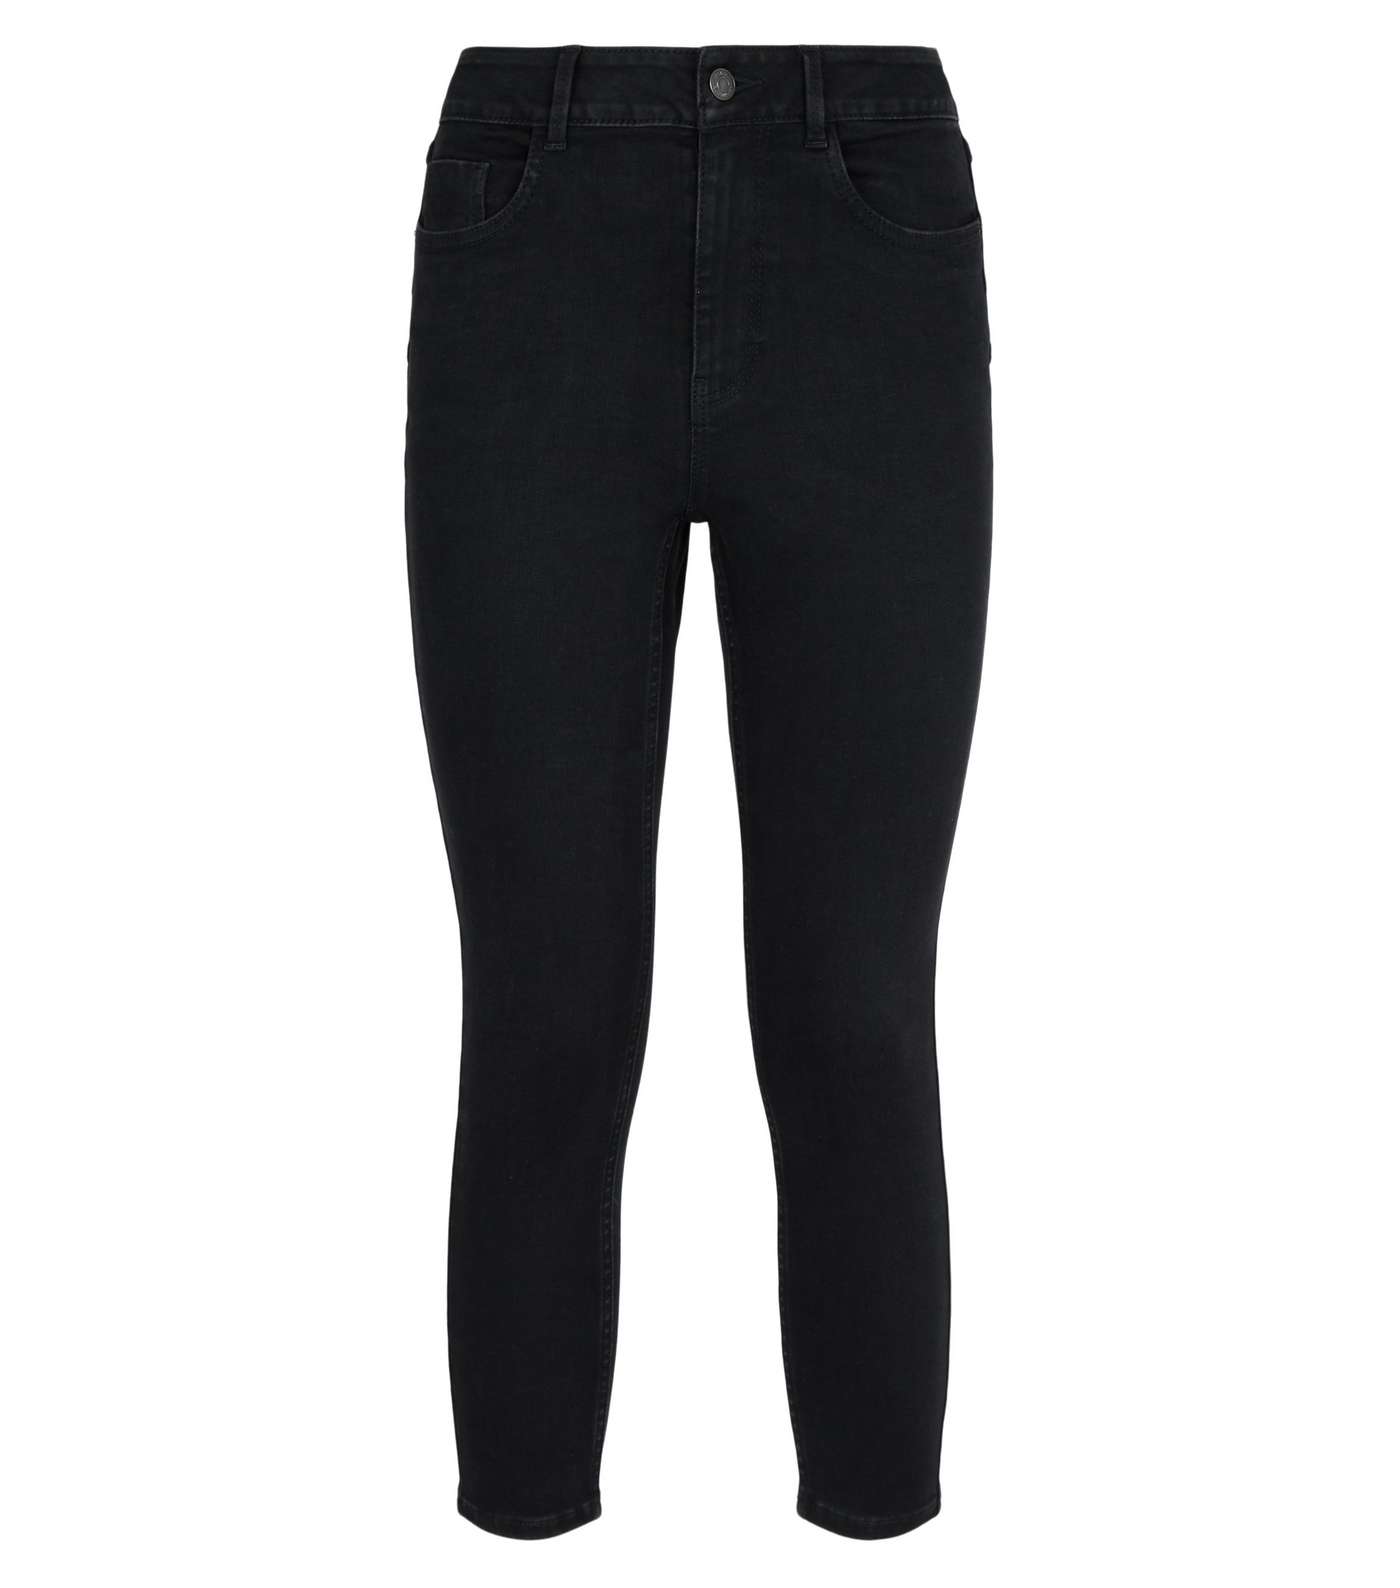 Petite Short Leg Black 'Lift & Shape' Jenna Skinny Jeans Image 5